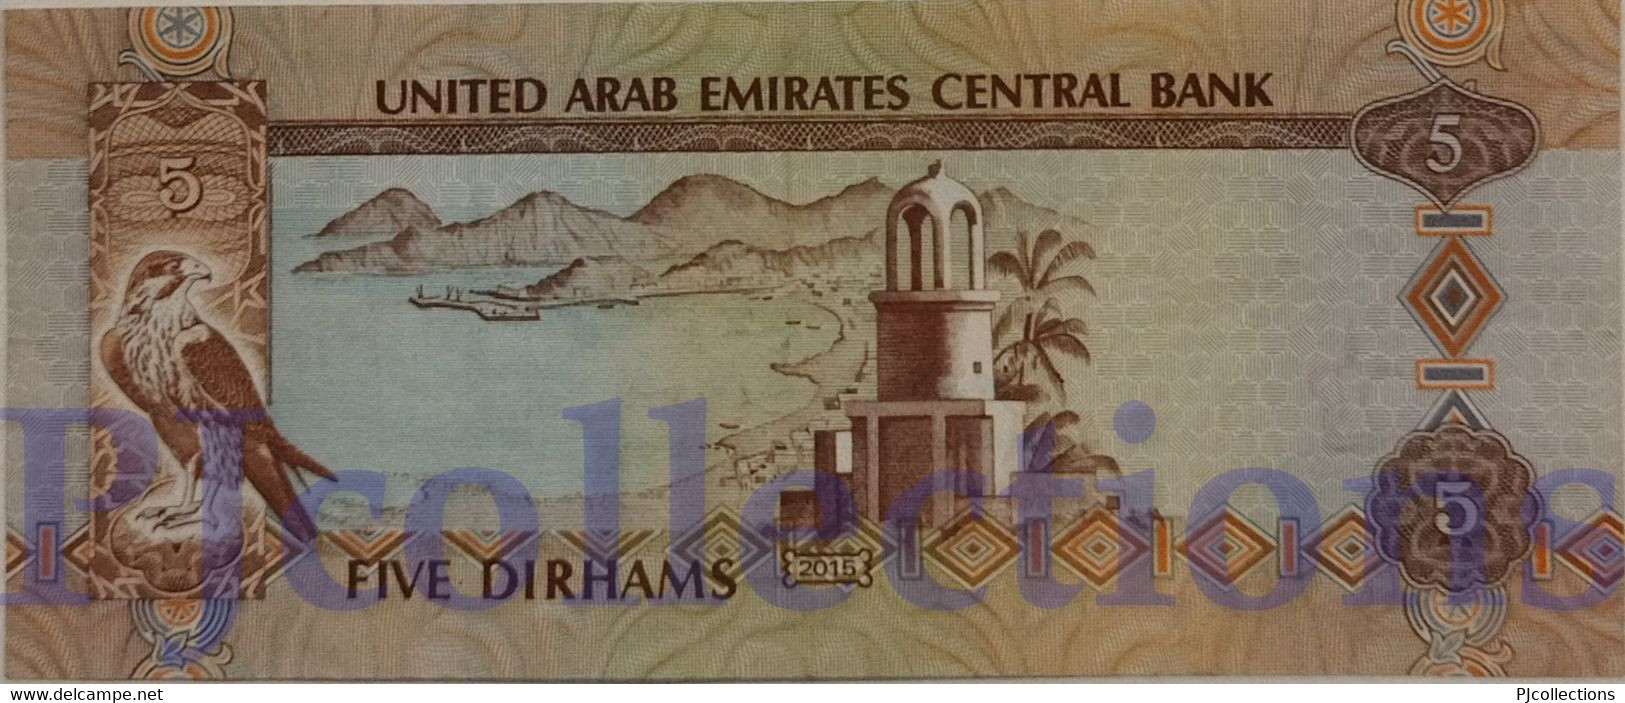 UNITED ARAB EMIRATES 5 DIRHAMS 2015 PICK 26c XF - United Arab Emirates